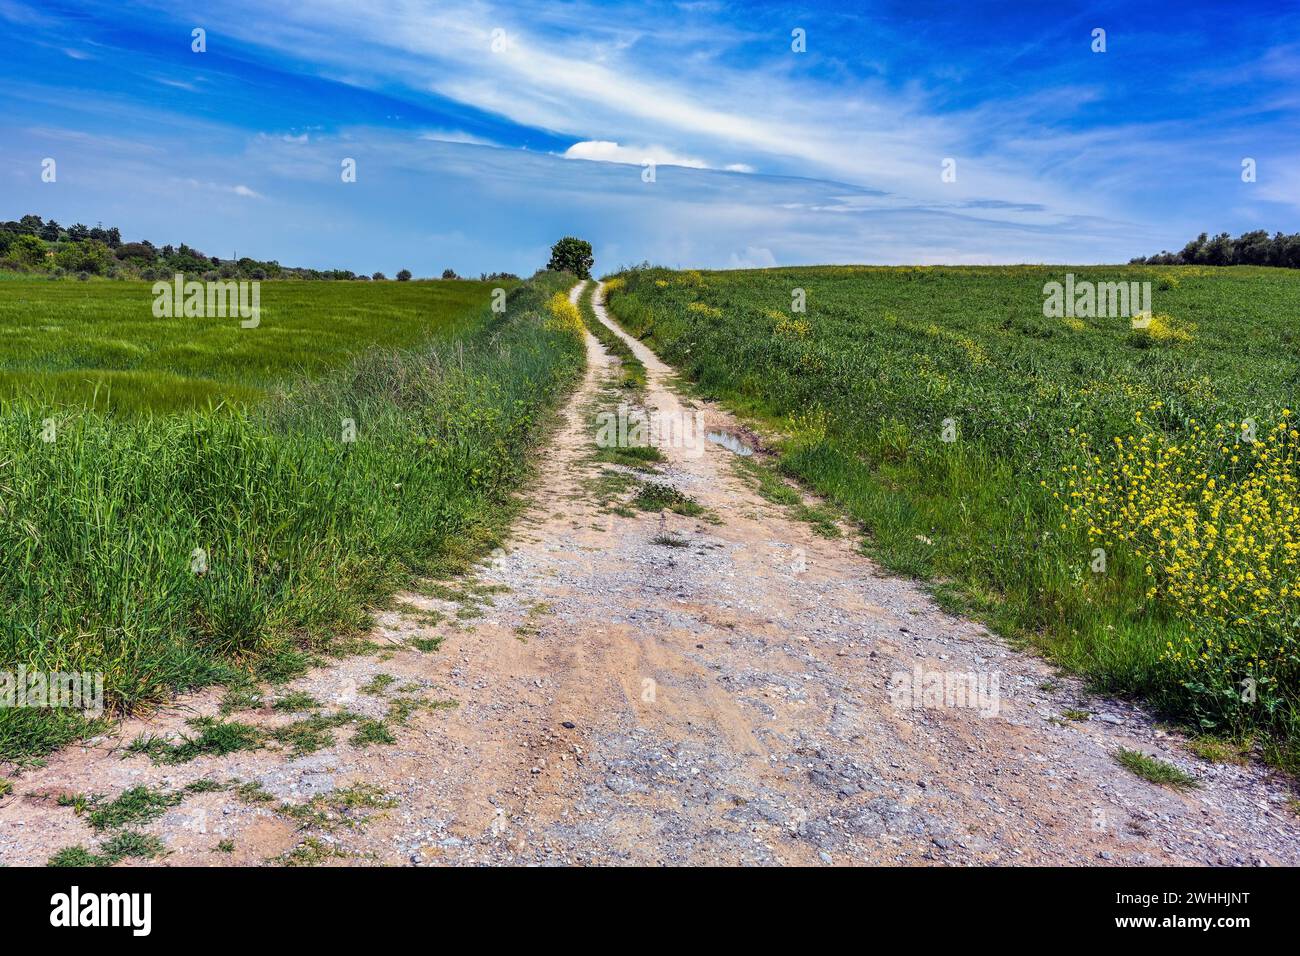 Route de campagne de gravier menant à travers les prairies et les champs à l'horizon sous un ciel bleu avec des nuages, paysage rural dans le centre G Banque D'Images